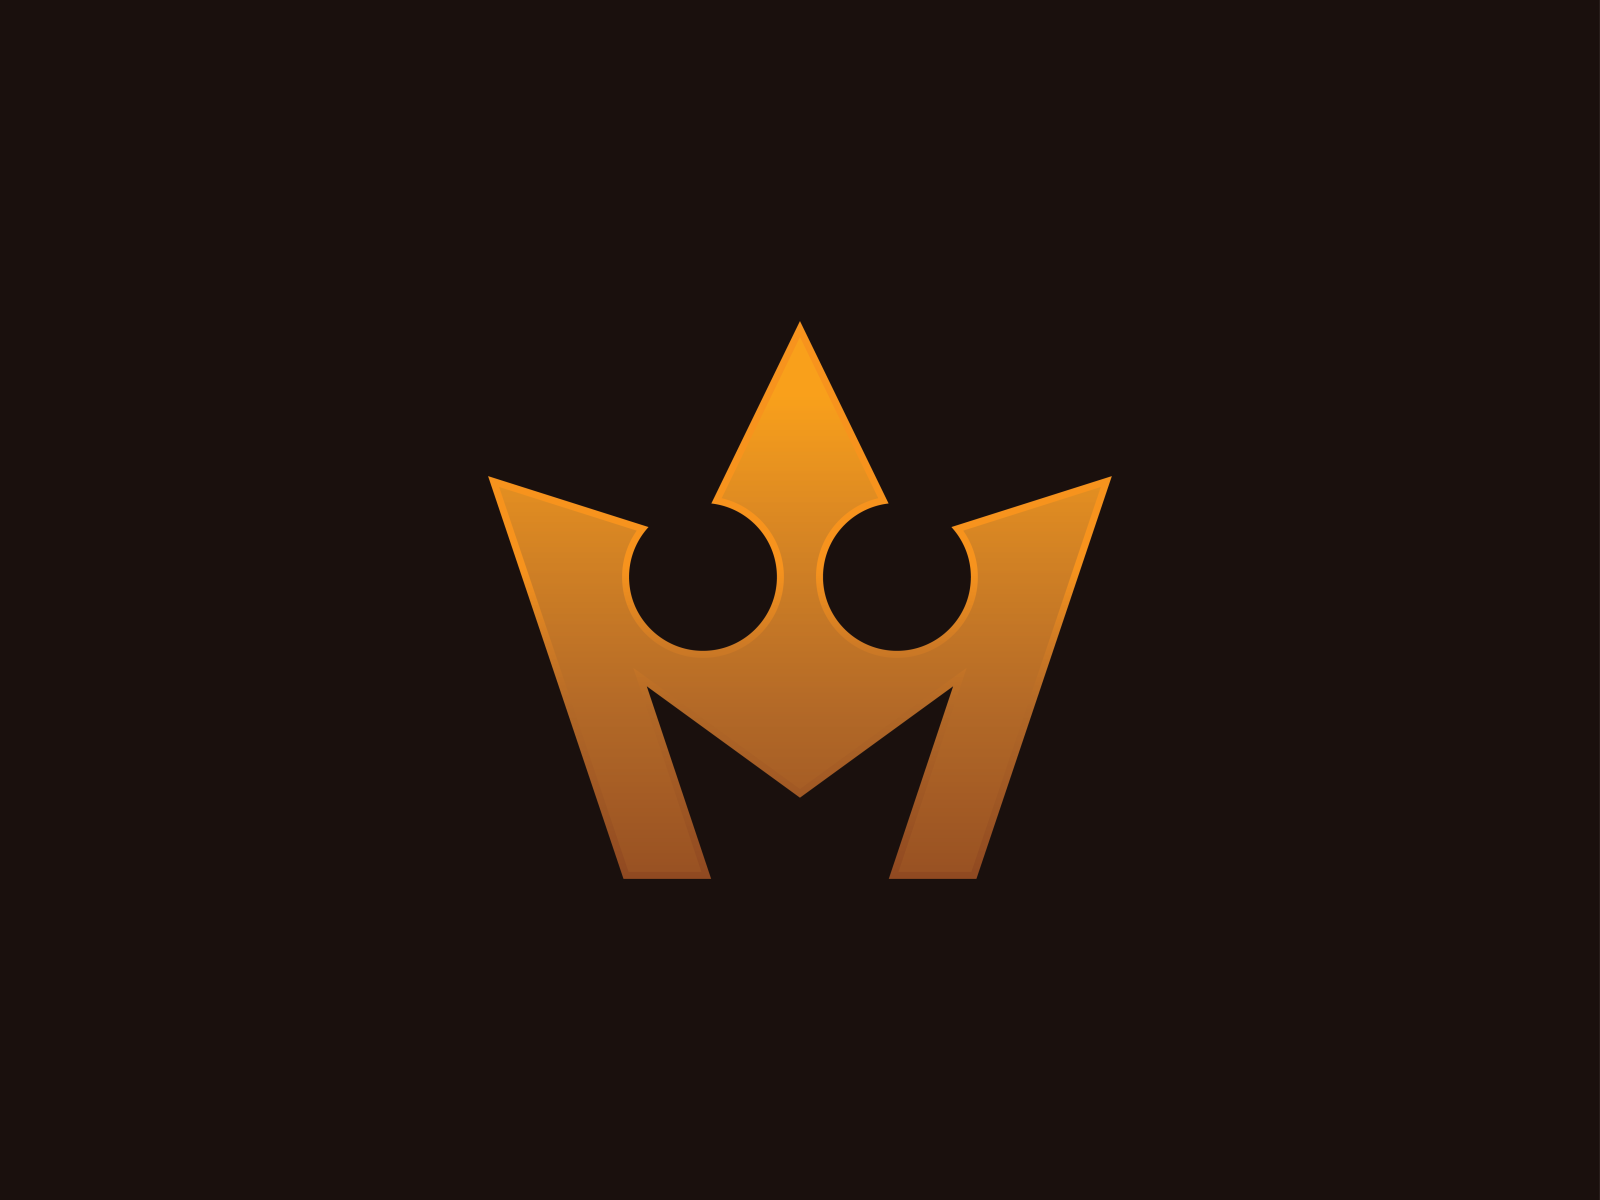 Gold Crown Letter M Logo